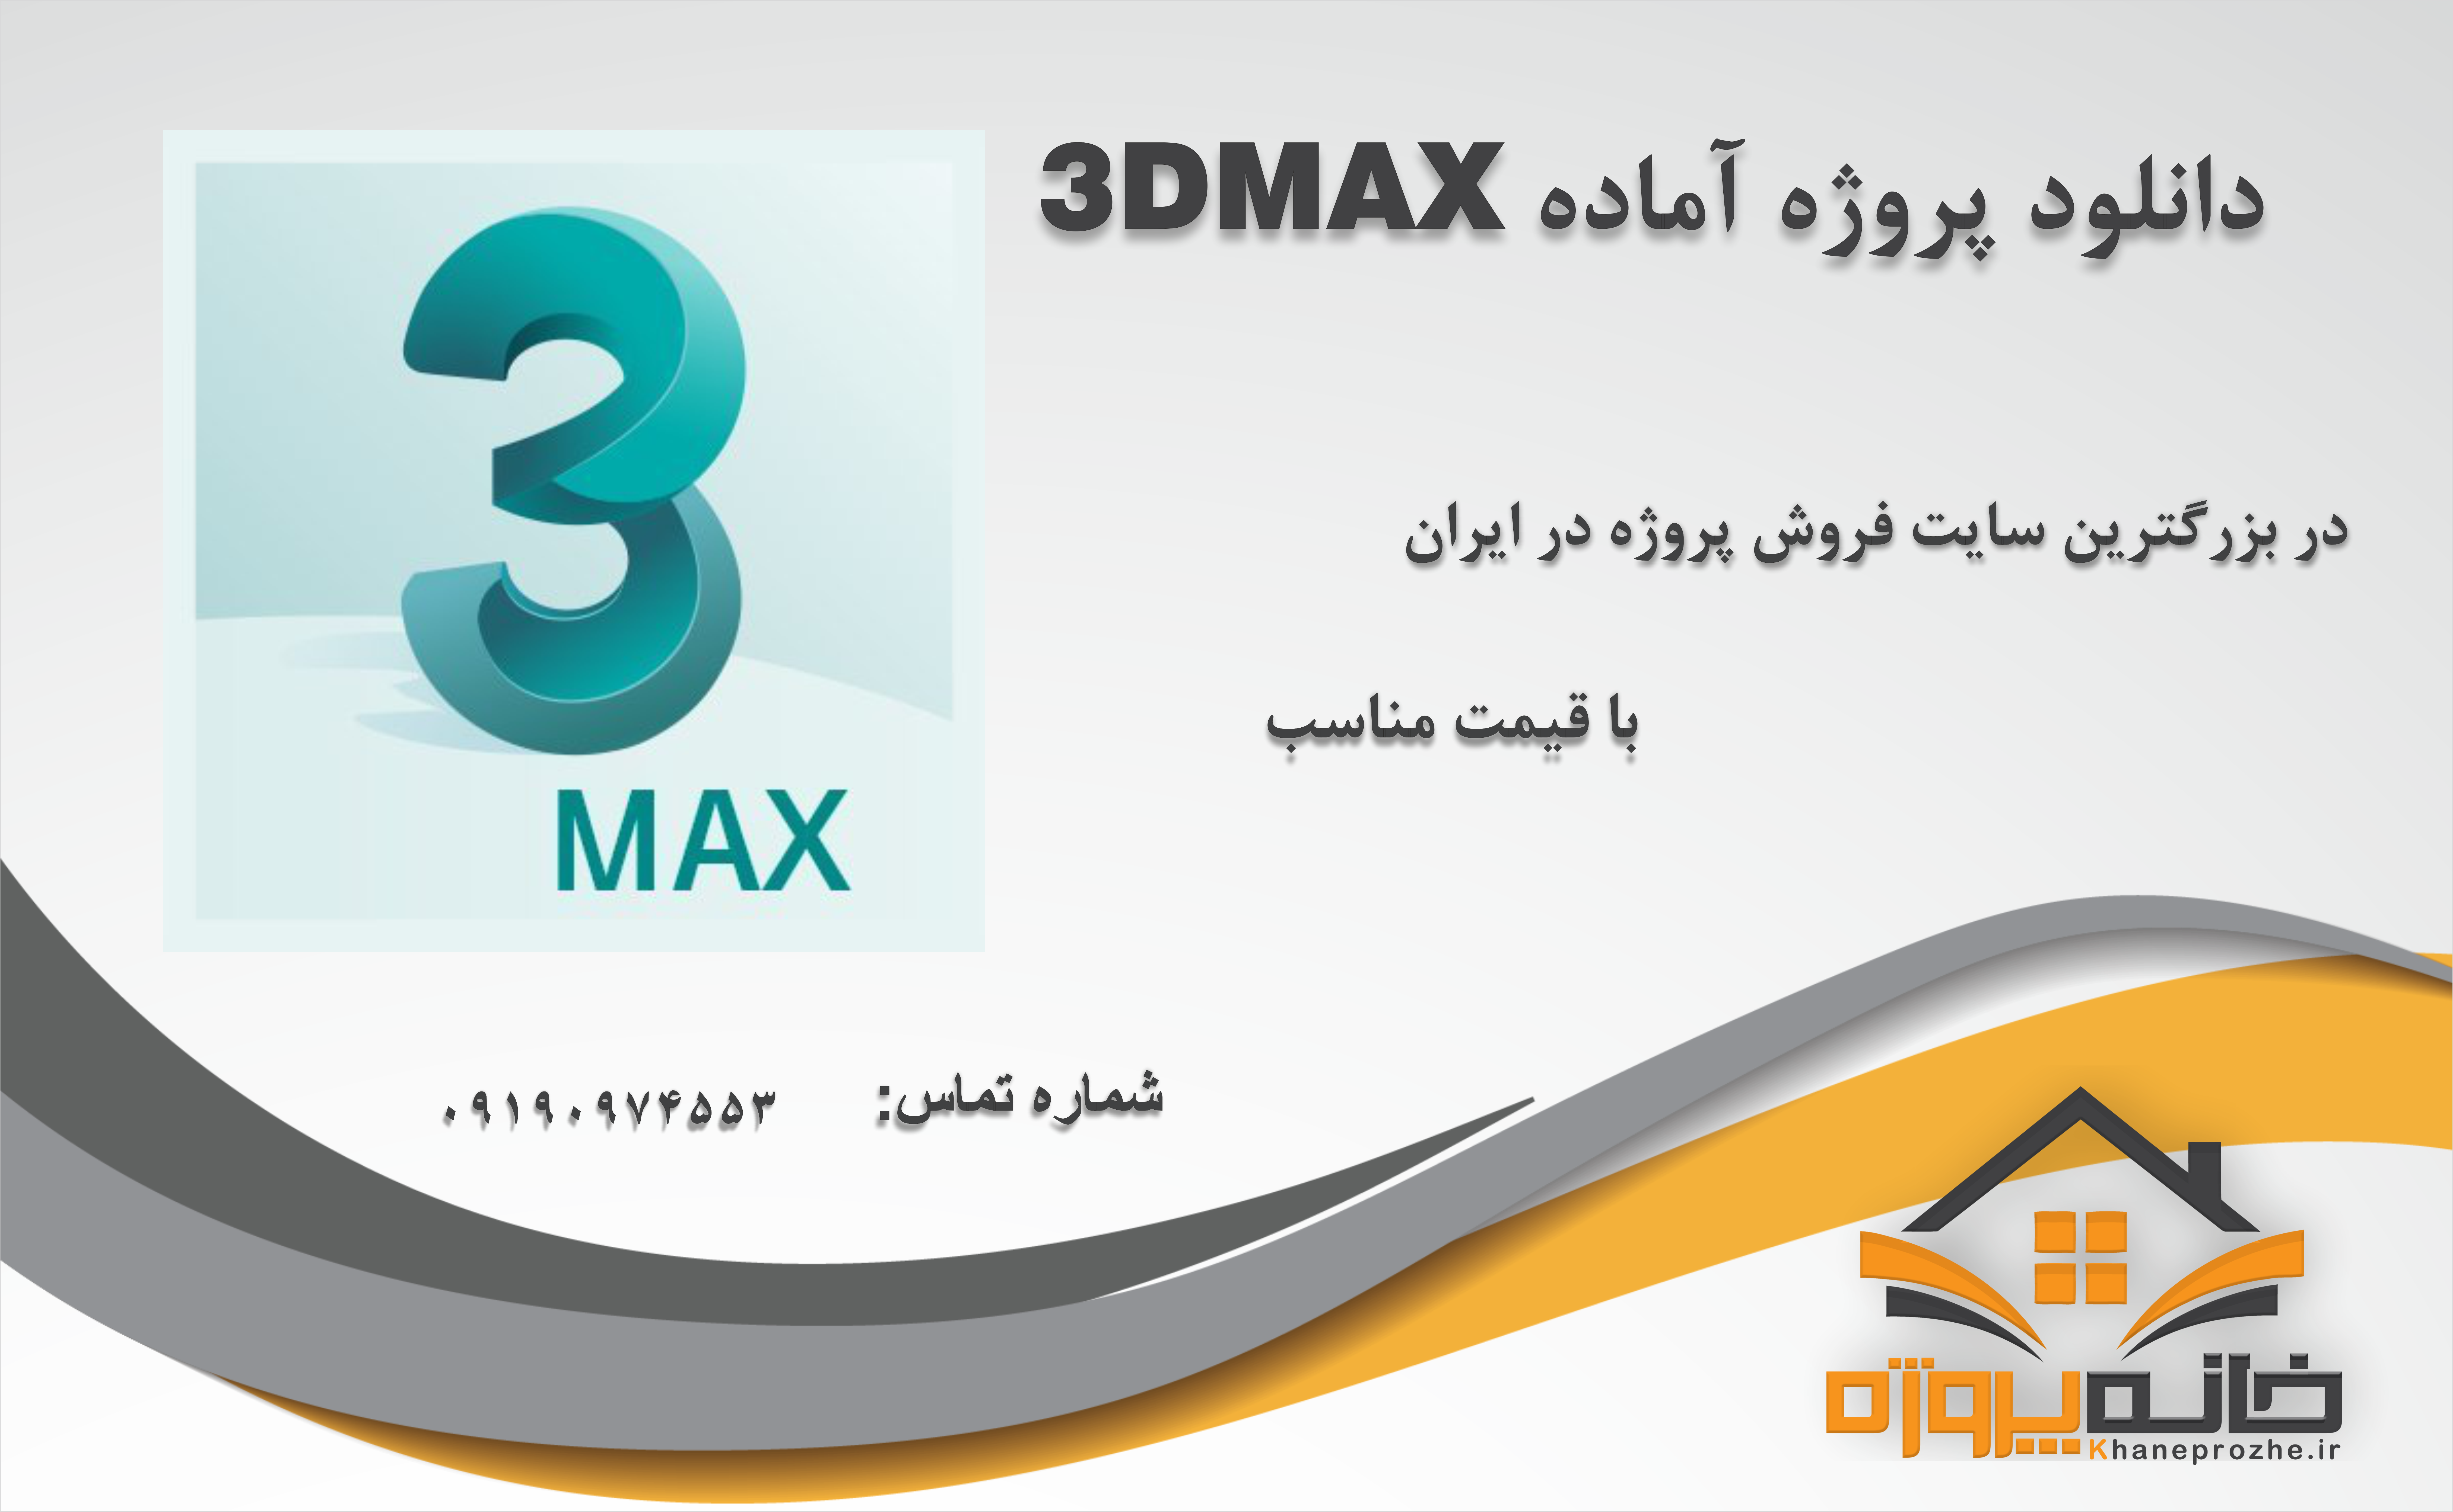 پروژه های آماده تری دی مکس (3DMAX)